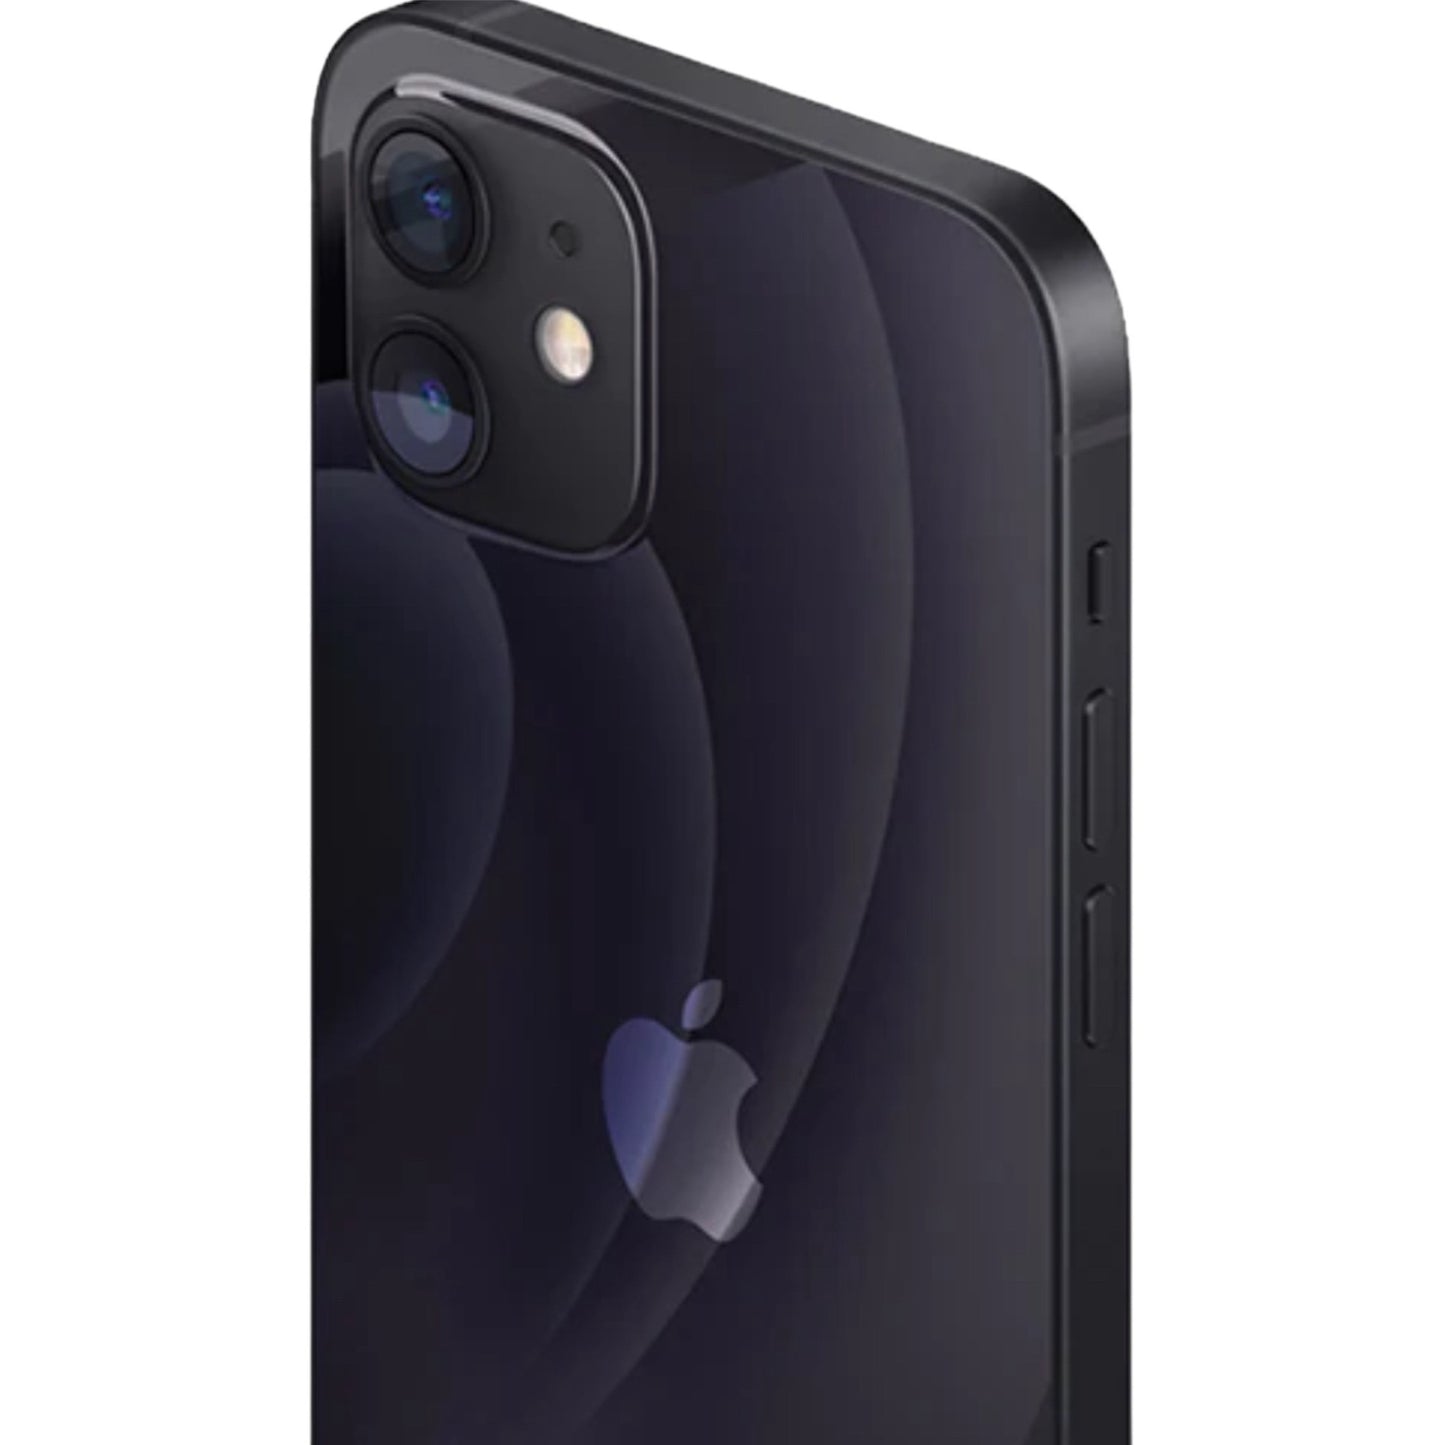 iPhone 12 Black 64GB (Unlocked) Pre-Owned